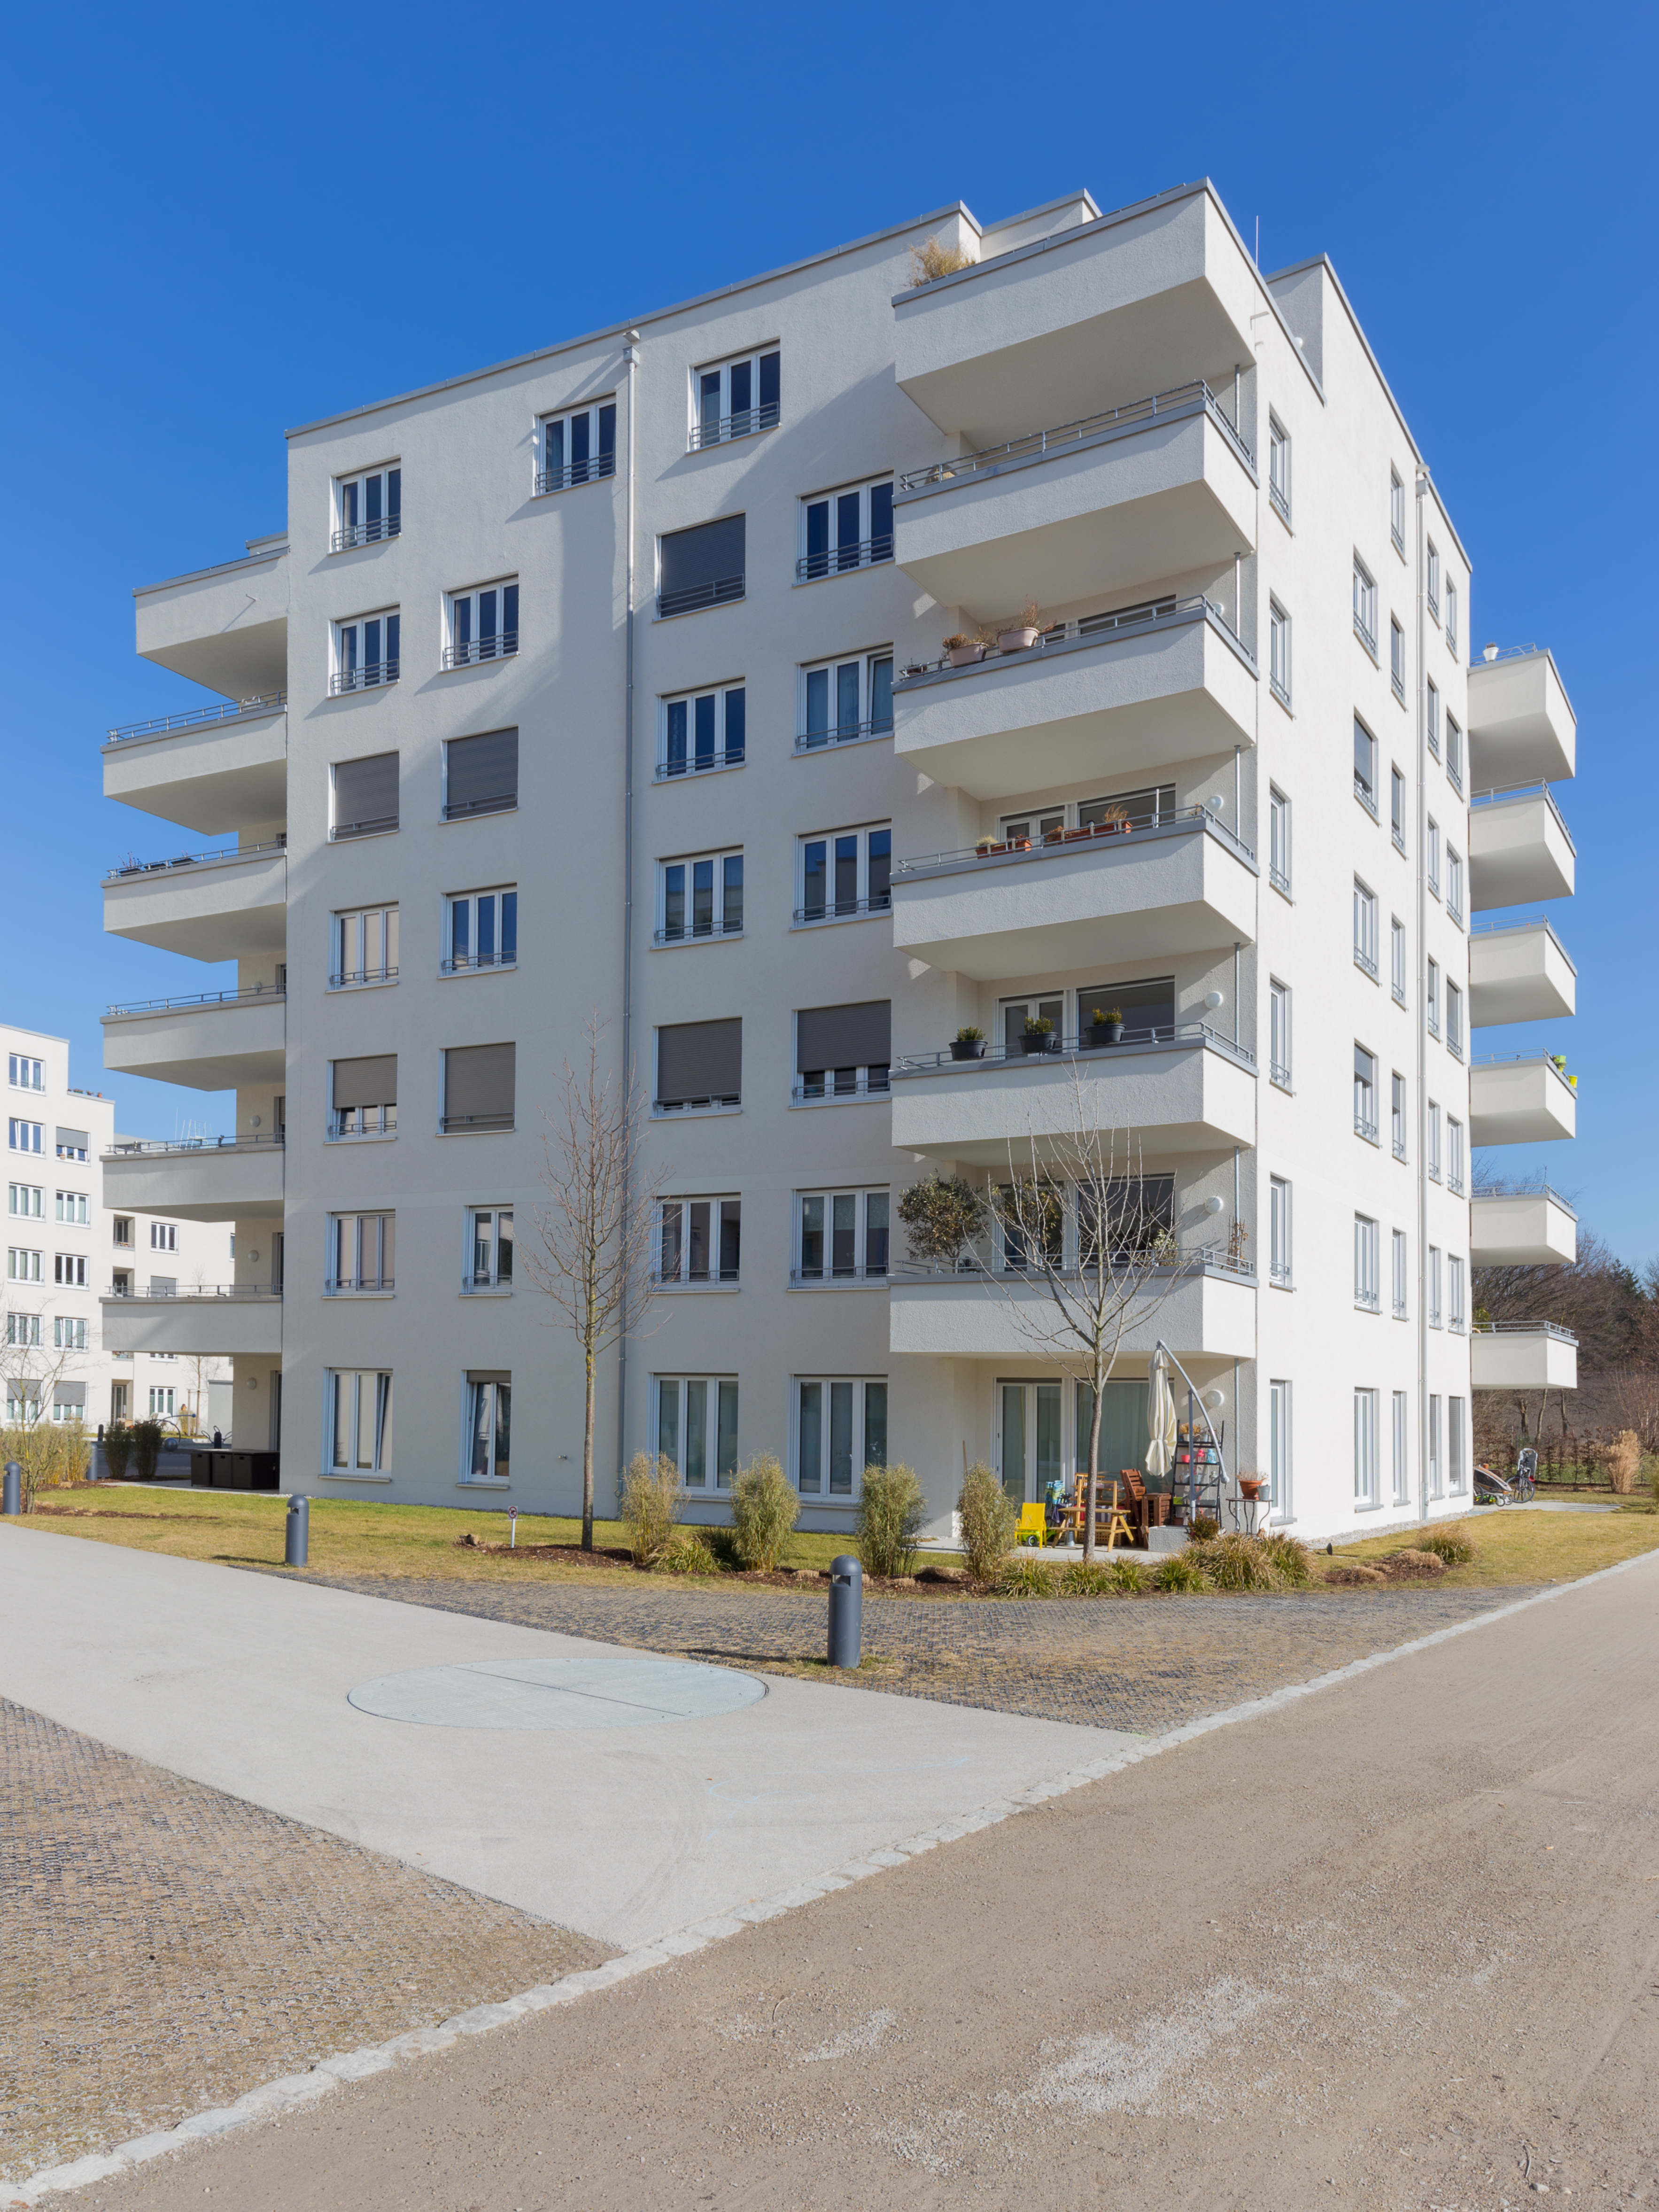 Haus-Westfassade mit Vorgarten und Gehweg, 2017, Faberstr. 8D, München